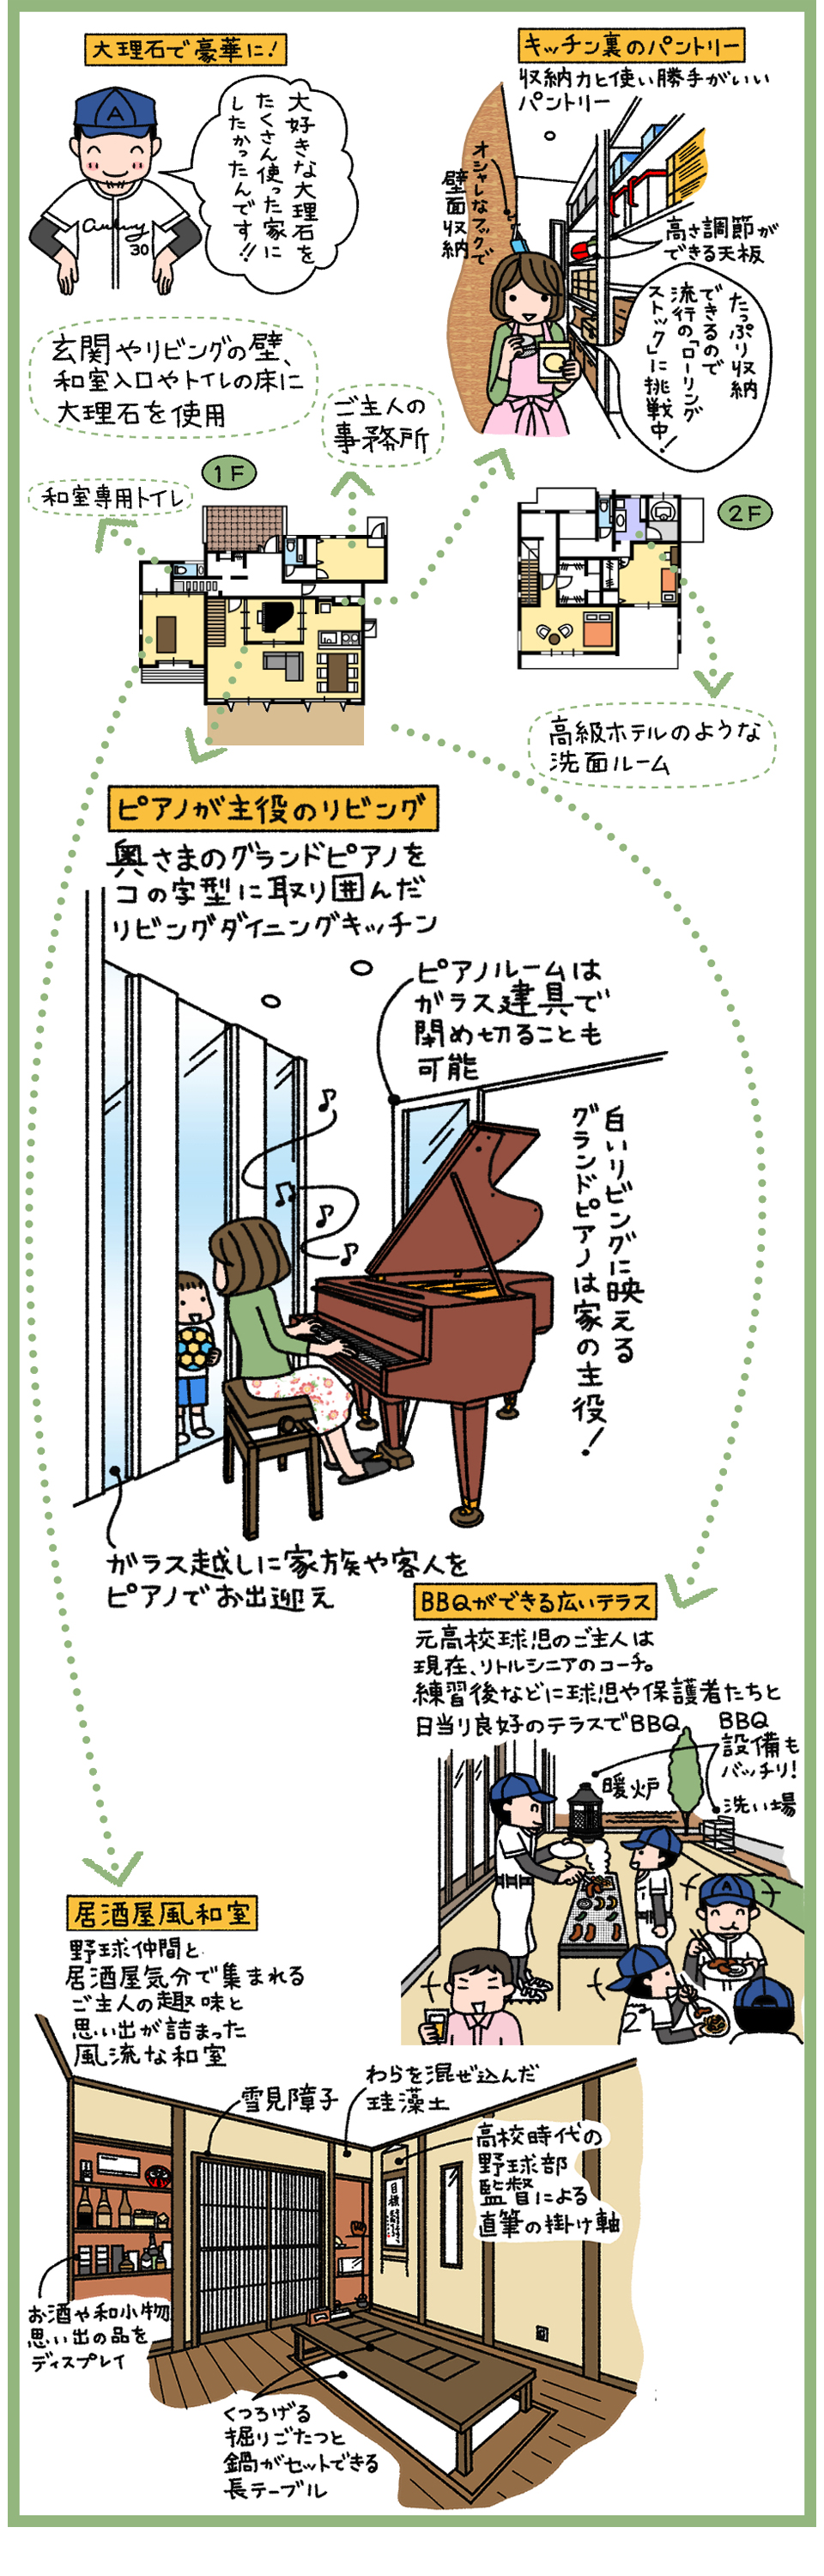 ピアノと野球をとことん楽しめる大理石のラグジュアリーハウス 神奈川 横浜 相模原エリアの注文住宅ならビルドアート